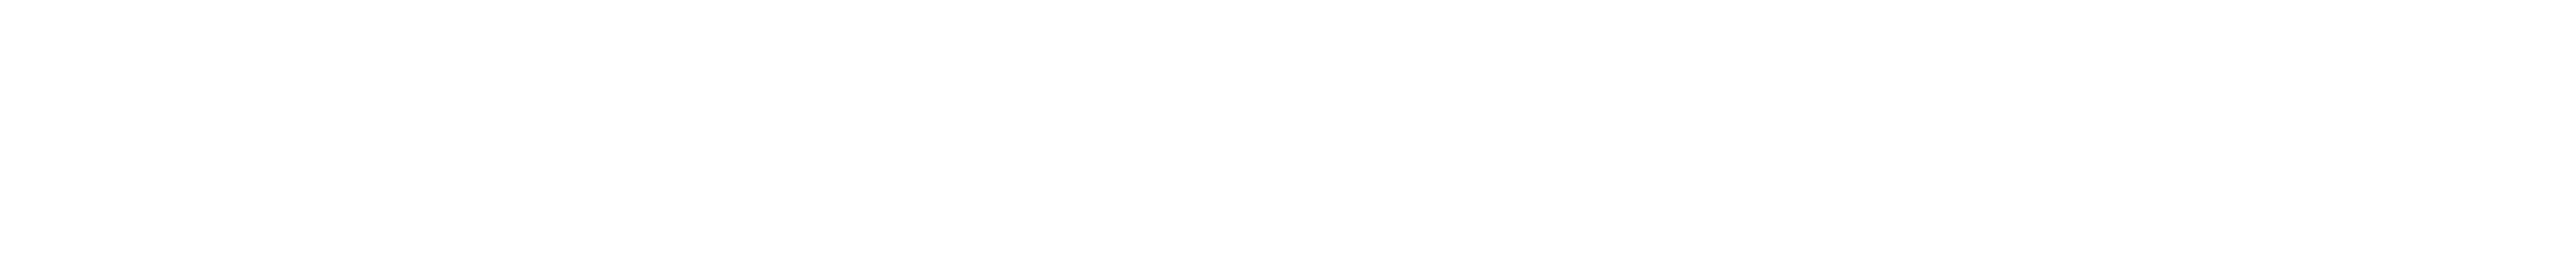 kavanagh-logos.png